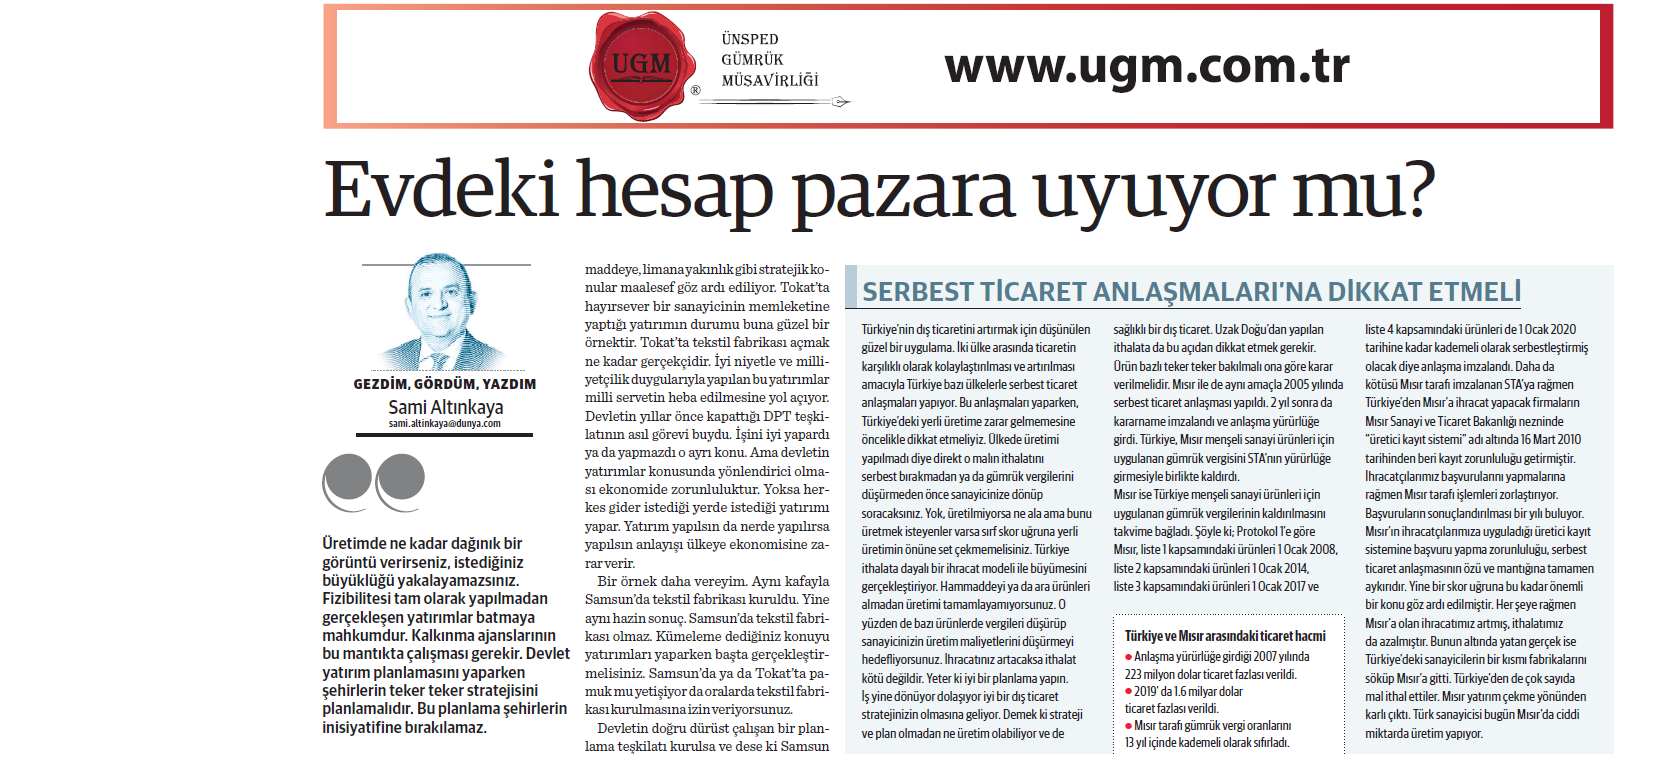 UGM Kurumsal İletişim Direktörümüz Sami Altınkaya'nın " Evdeki hesap pazara uyuyor mu?" başlıklı yazısı, 21.09.2020 tarihinde Dünya Gazetesi'nde yayınlandı.